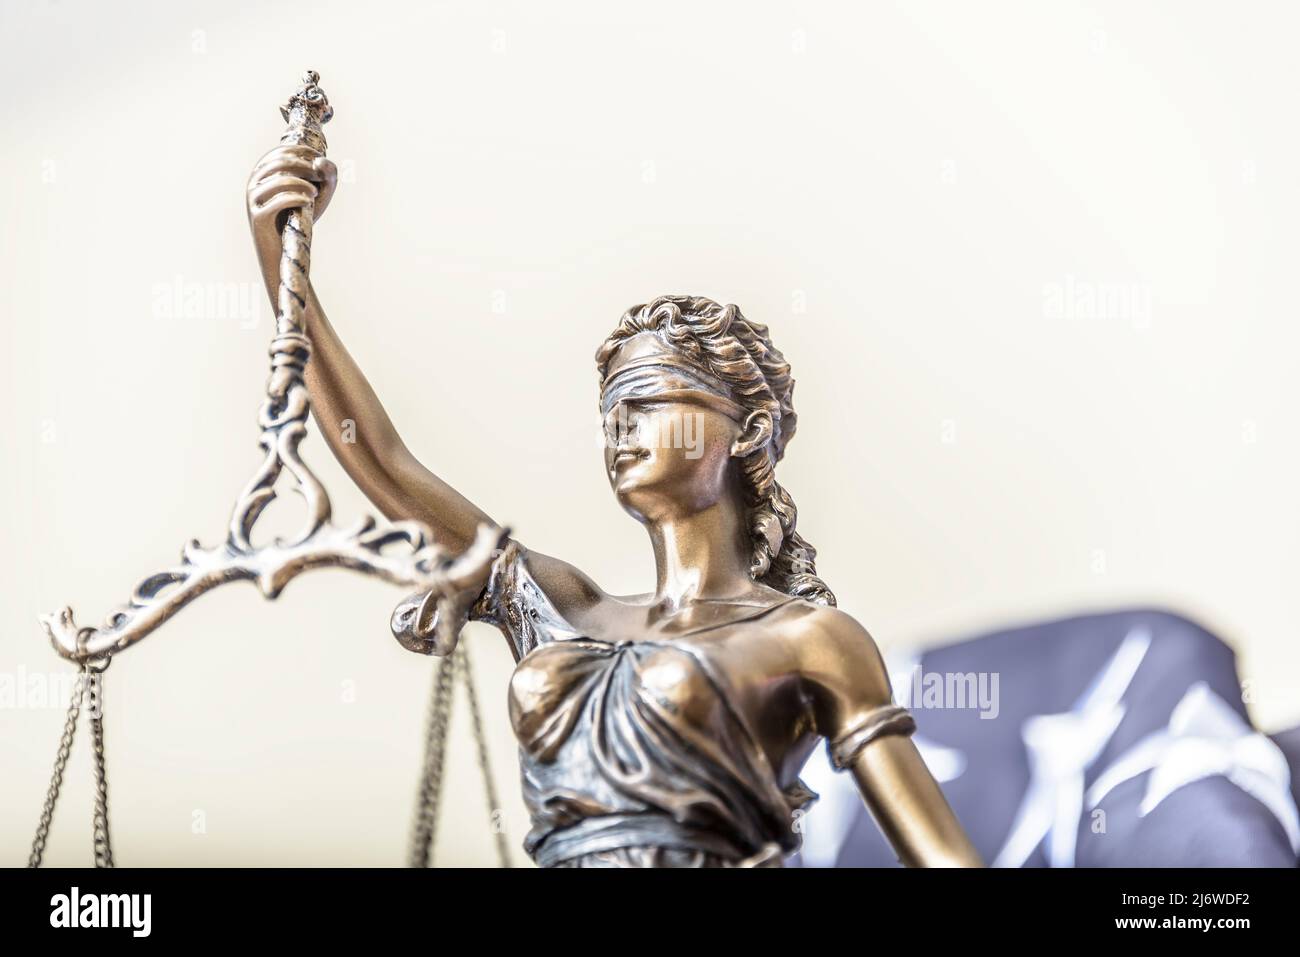 Die Statue der Gerechtigkeit Themis oder Iustitia, die Göttin der Gerechtigkeit mit verbundenen Augen gegen eine Flagge der Vereinigten Staaten von Amerika, als Rechtsbegriff. Stockfoto